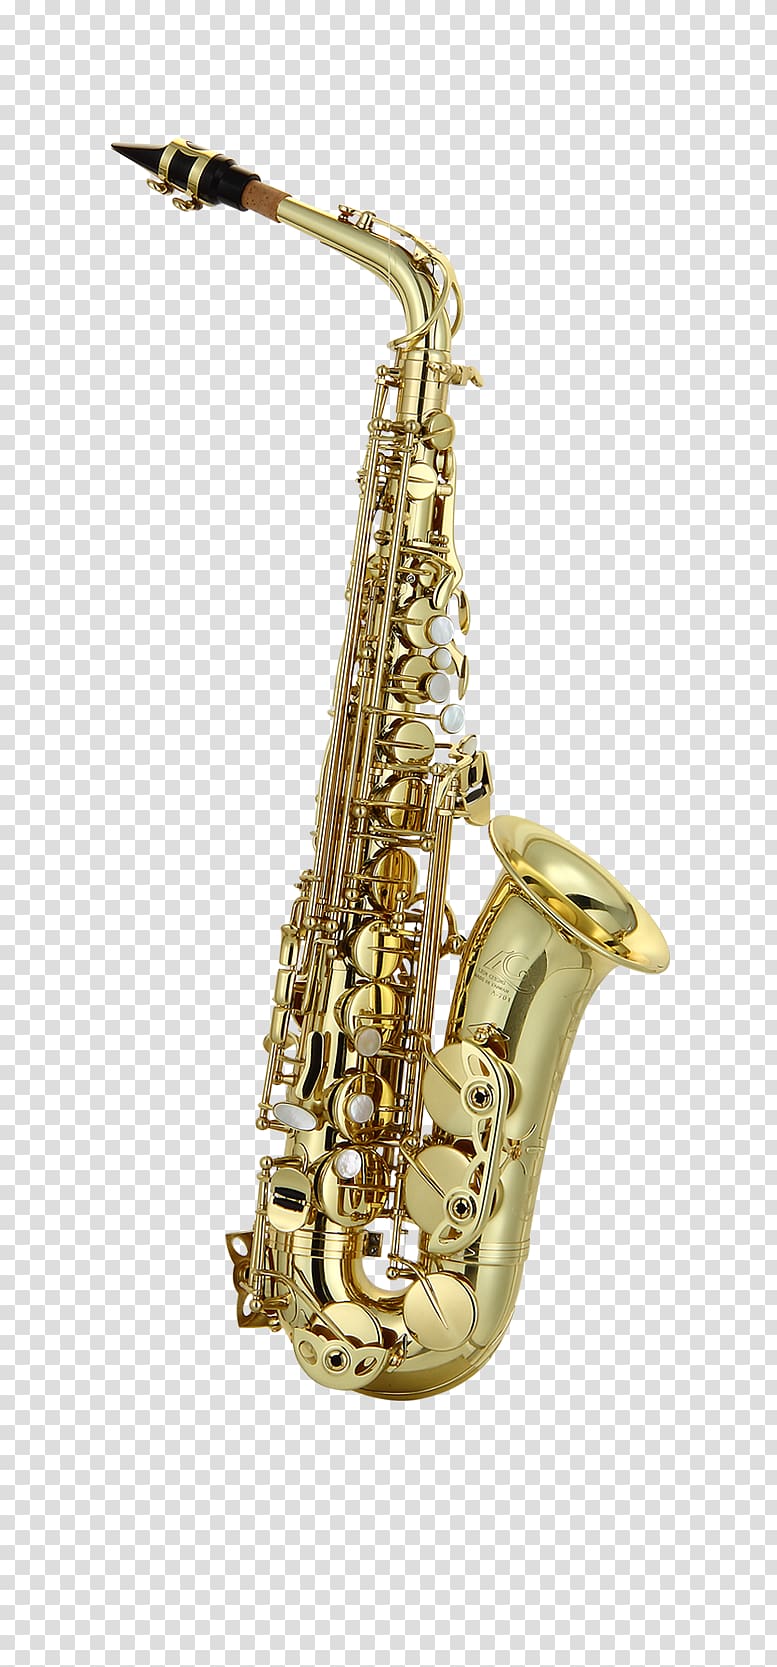 Mantes-la-Ville Alto saxophone Henri Selmer Paris Musical Instruments, Saxophone transparent background PNG clipart